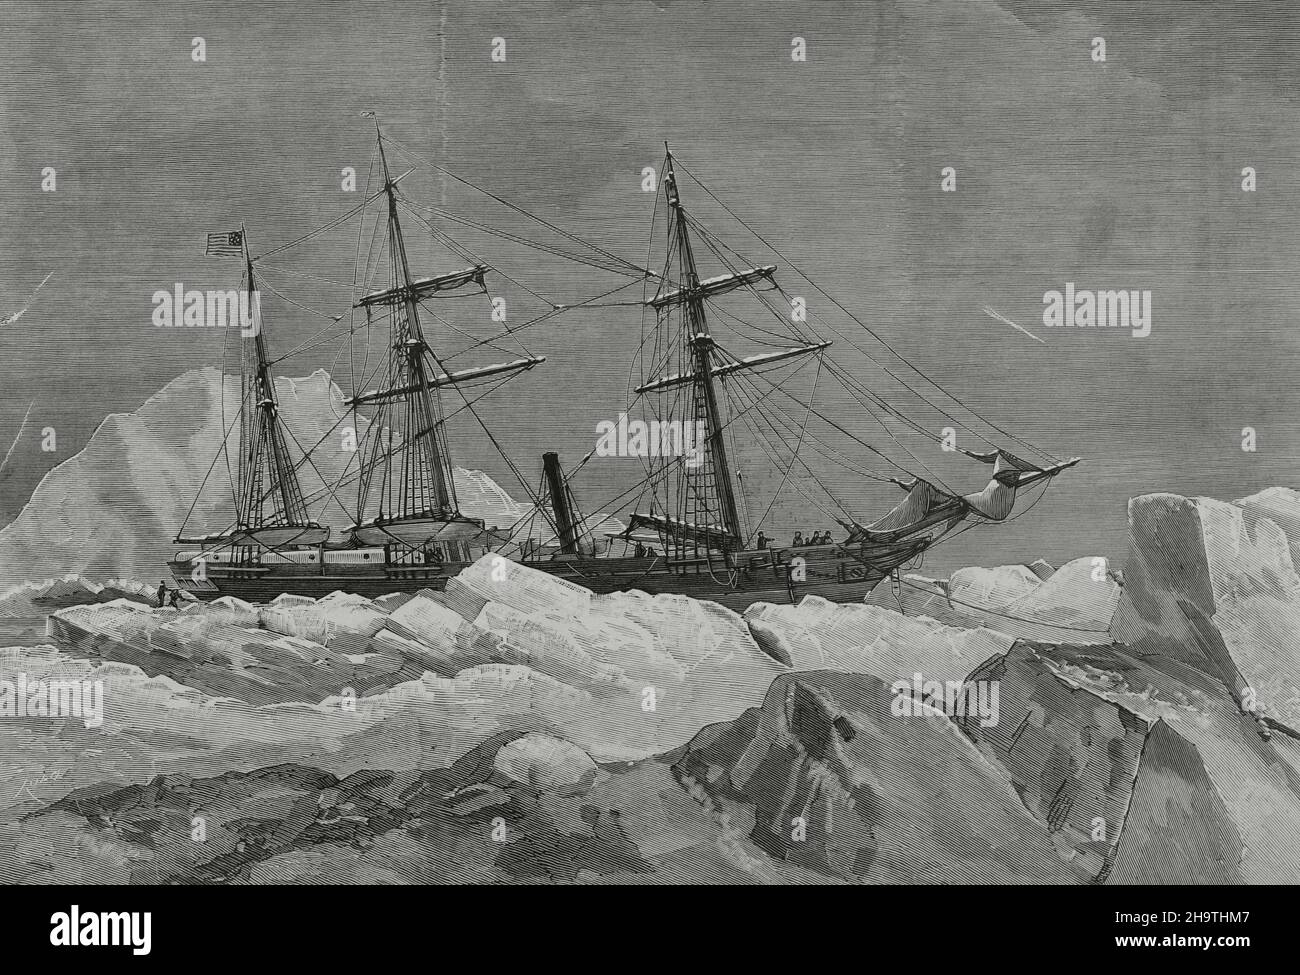 Arktische Erkundungen. Polarexpedition in die Arktis von George Washington De Long (1844-1881). Das Schiff 'Jeannette' wurde in der Nähe der Wranel-Insel von Eis zerkleinert. Die Jeanette, die am 12. Juni 1881 im Eis nordöstlich der Neusibirischen Inseln aufgegeben wurde. Gravur von Rico. La Ilustración Española y Americana, 1882. Stockfoto